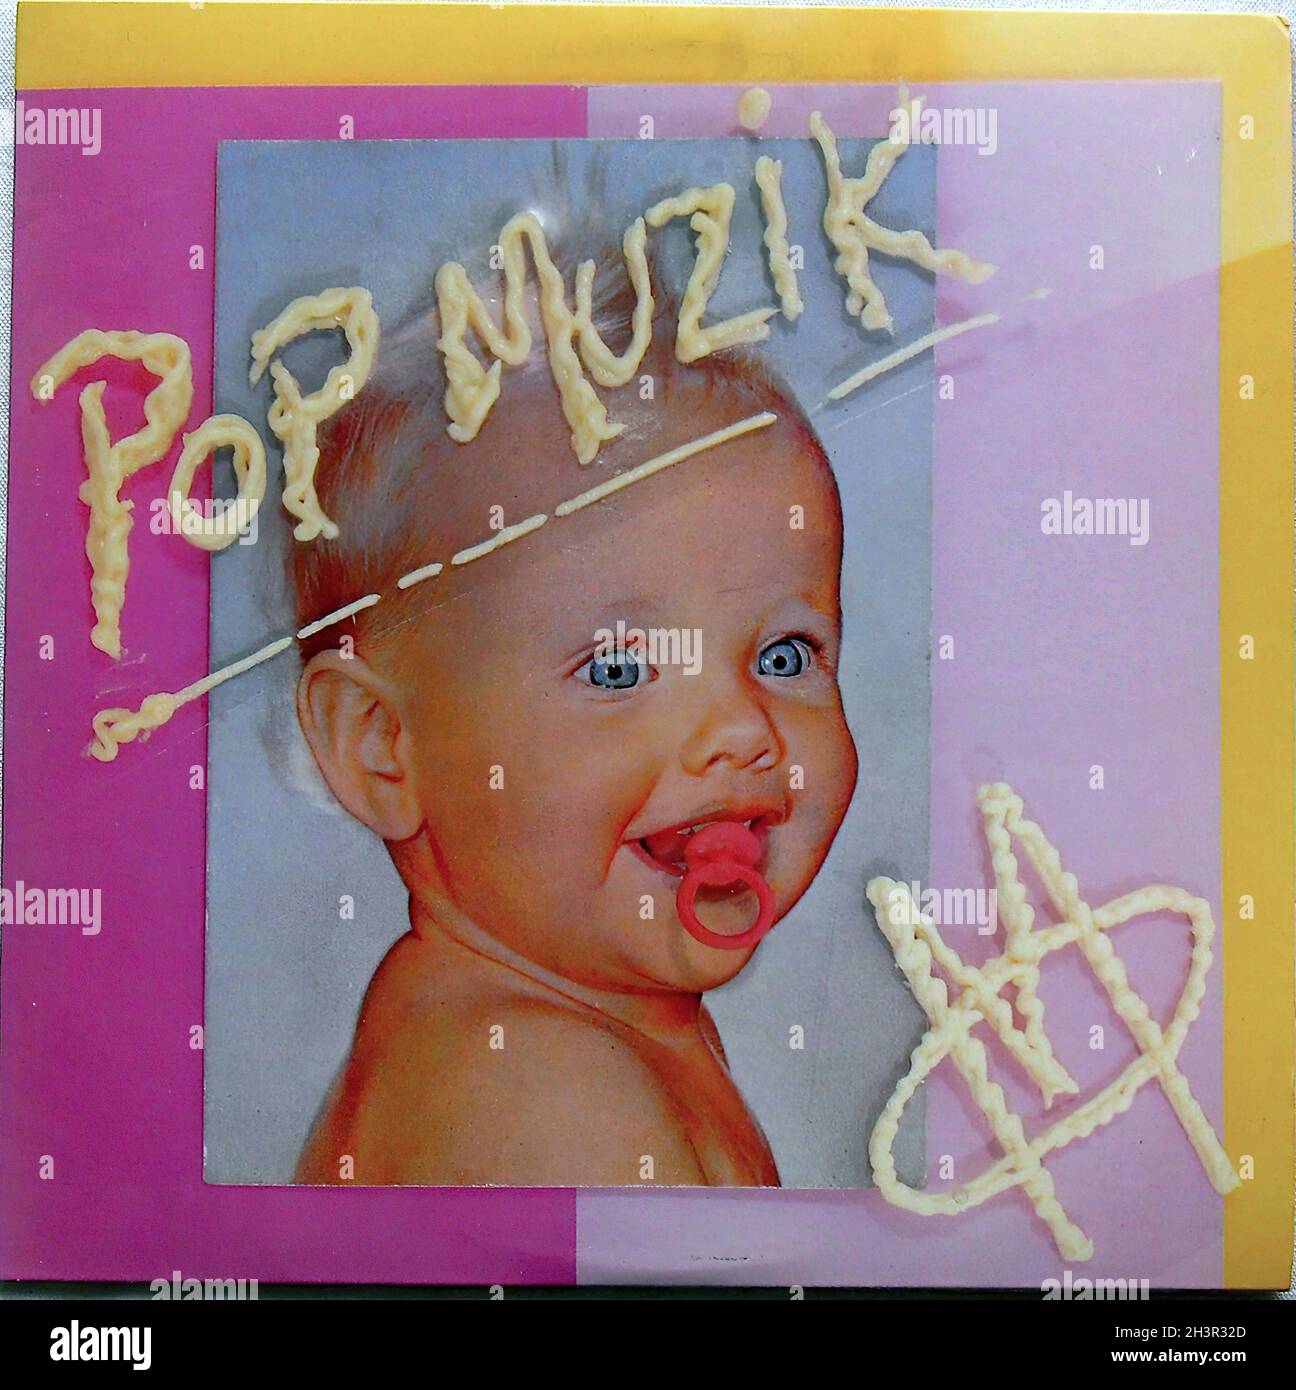 M pop muzik hi-res stock photography and images - Alamy